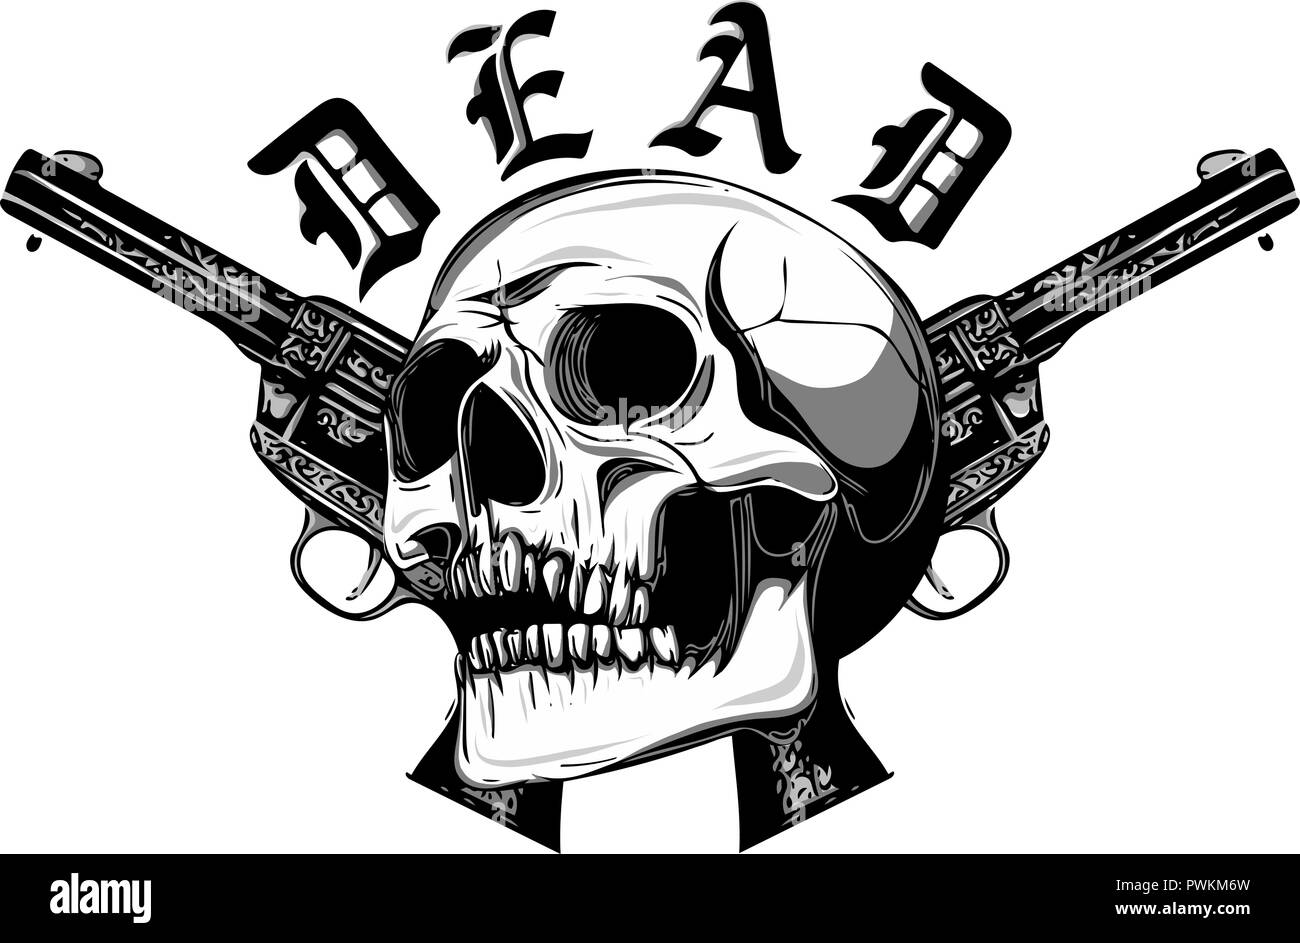 Skull soldier army mascot logo design illustration Stock Vector